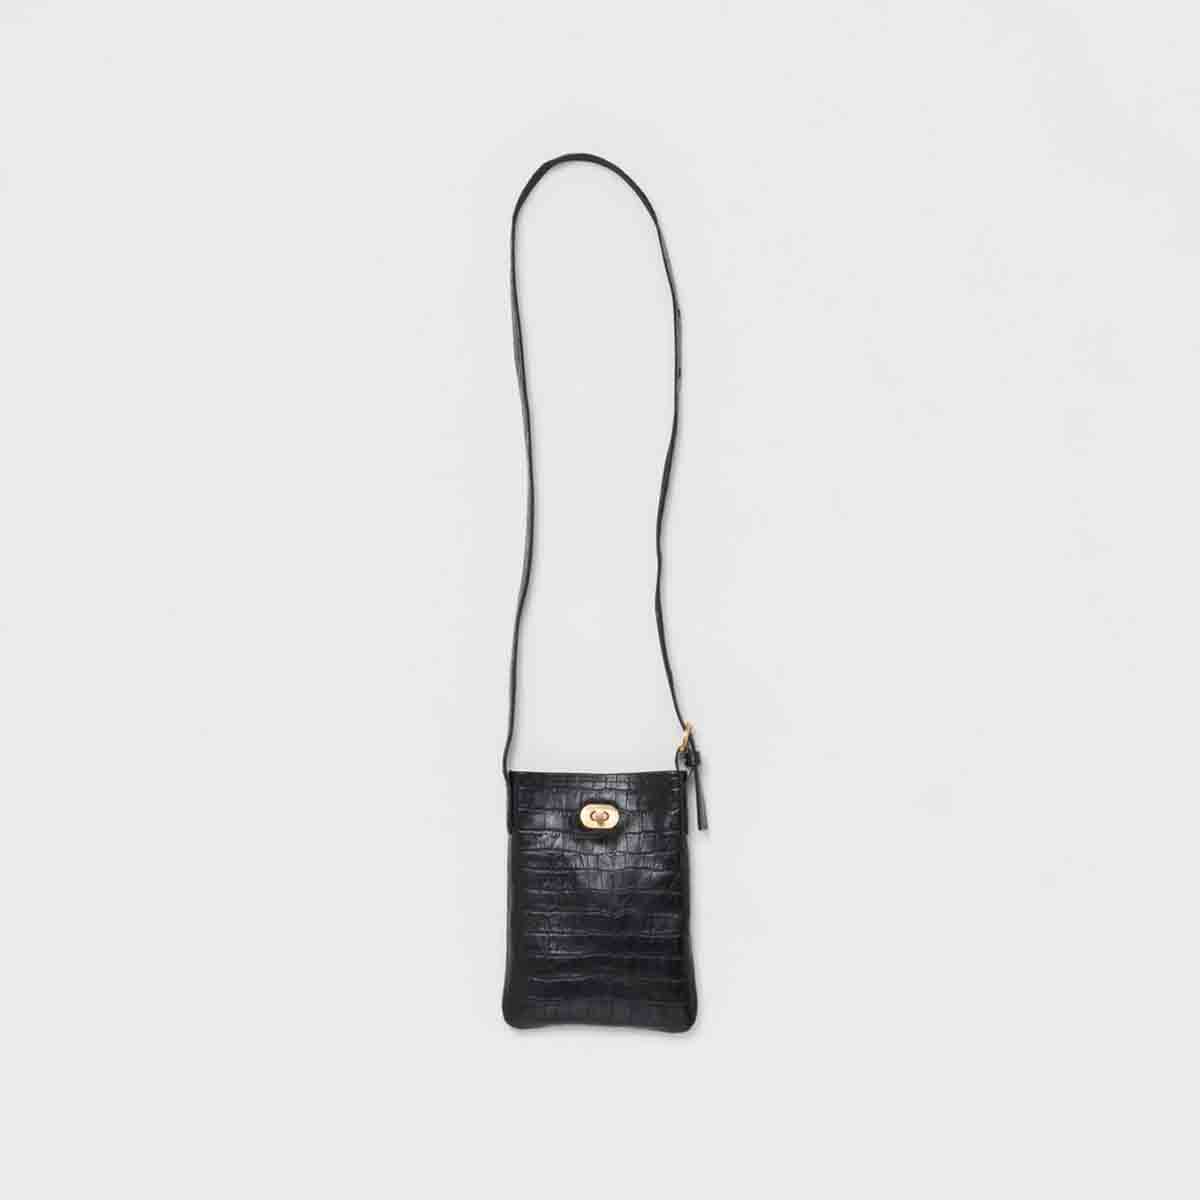 魅力的な価格 Hender Scheme ファッションの エンダースキーマ twist buckle XS bag crocodile